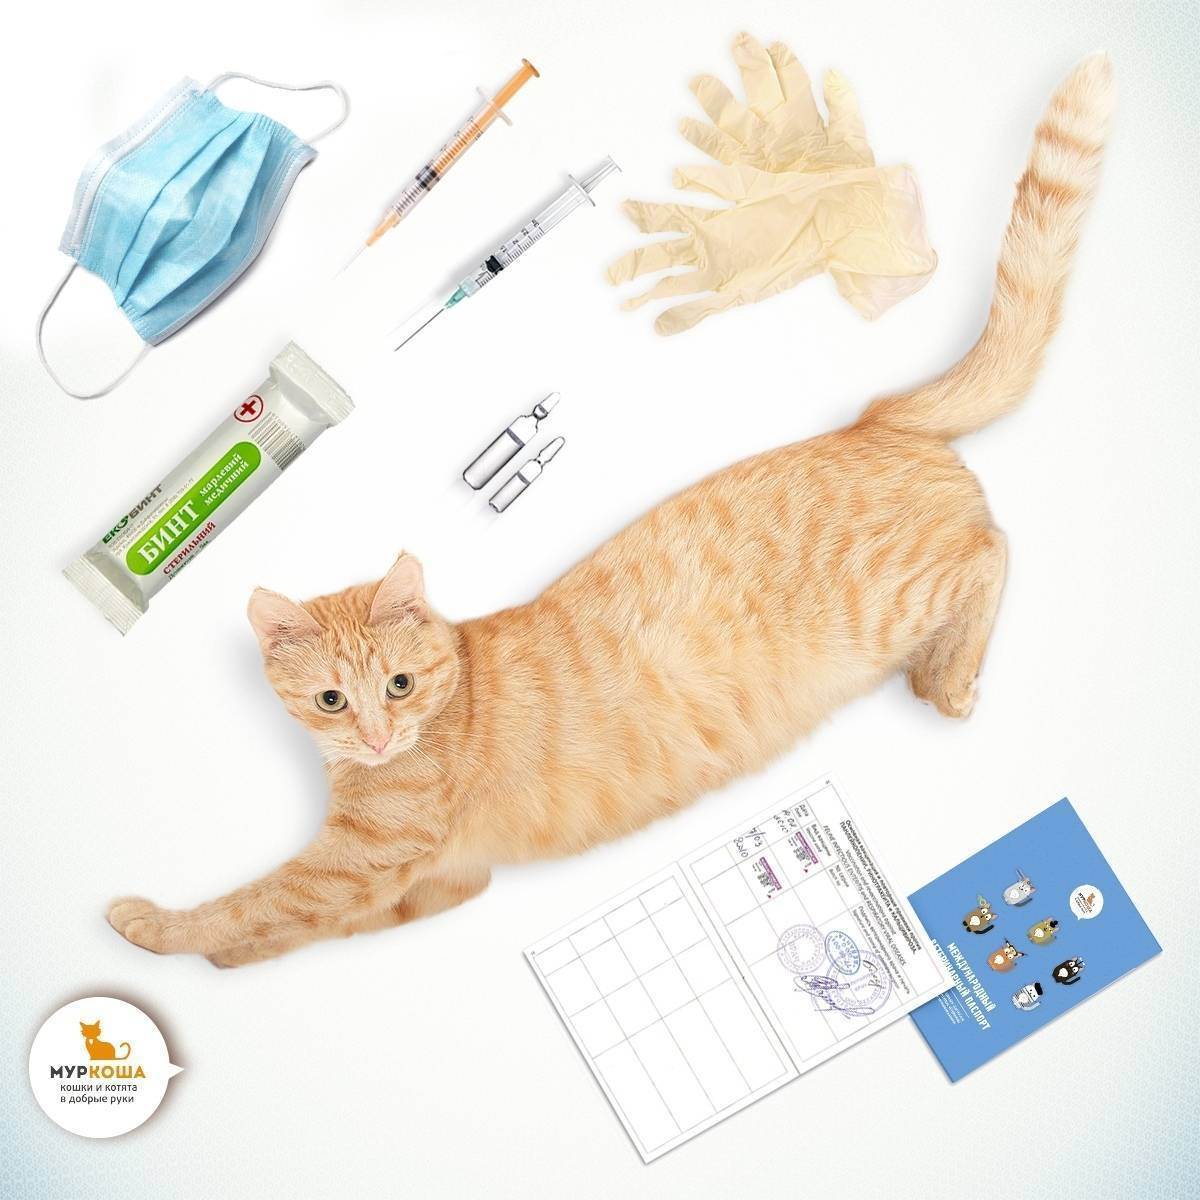 Прививка от бешенства кошке: какая вакцина применяется, как действует, когда делать, рекомендации ветеринаров, отзывы